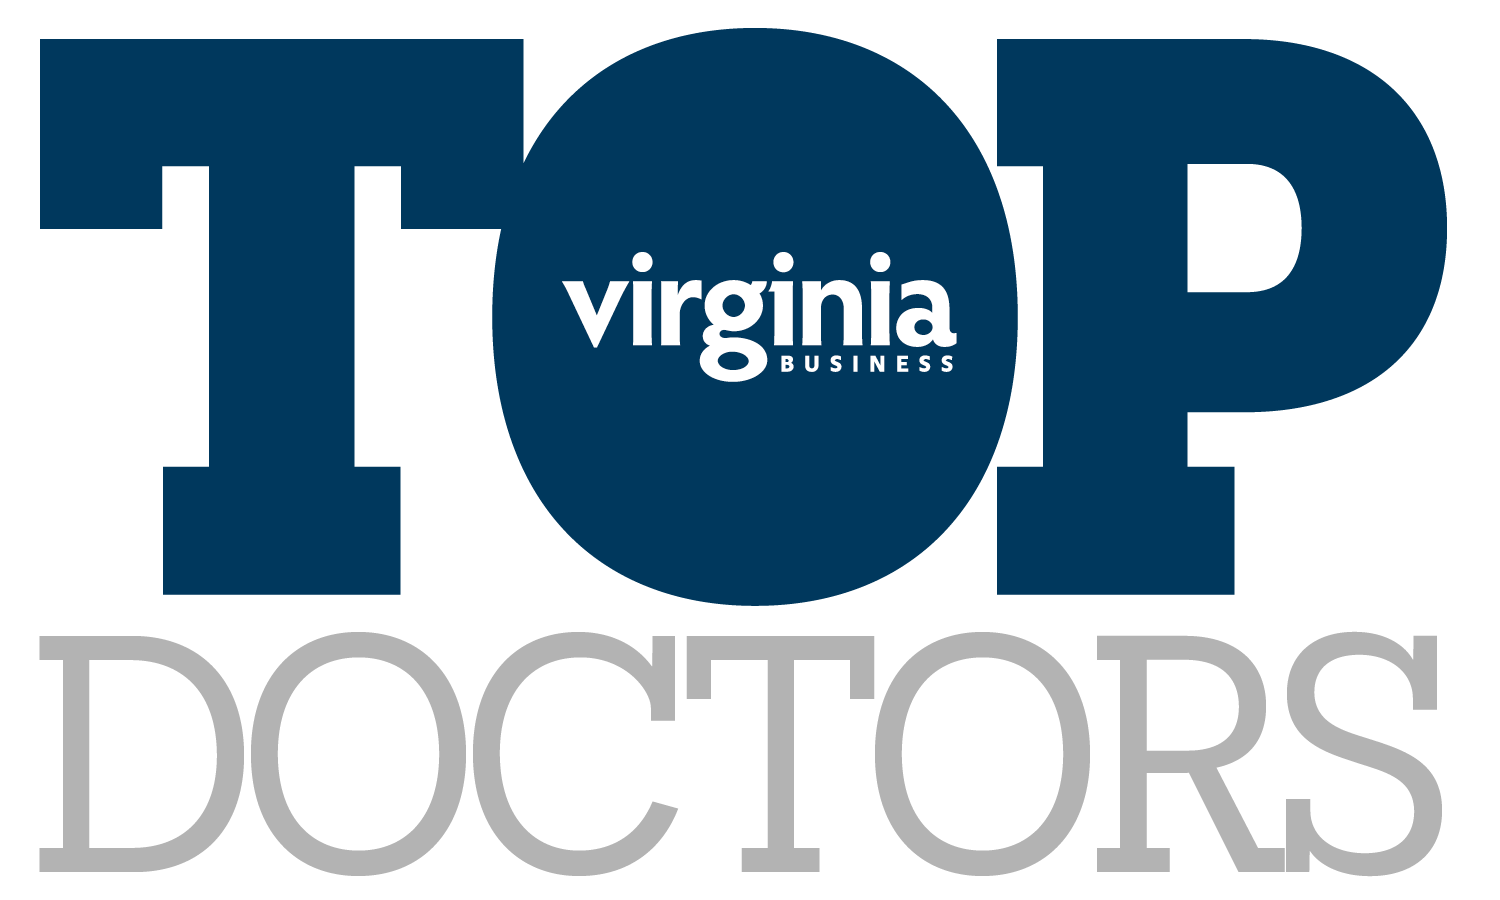 Virginia Business Top Doctors